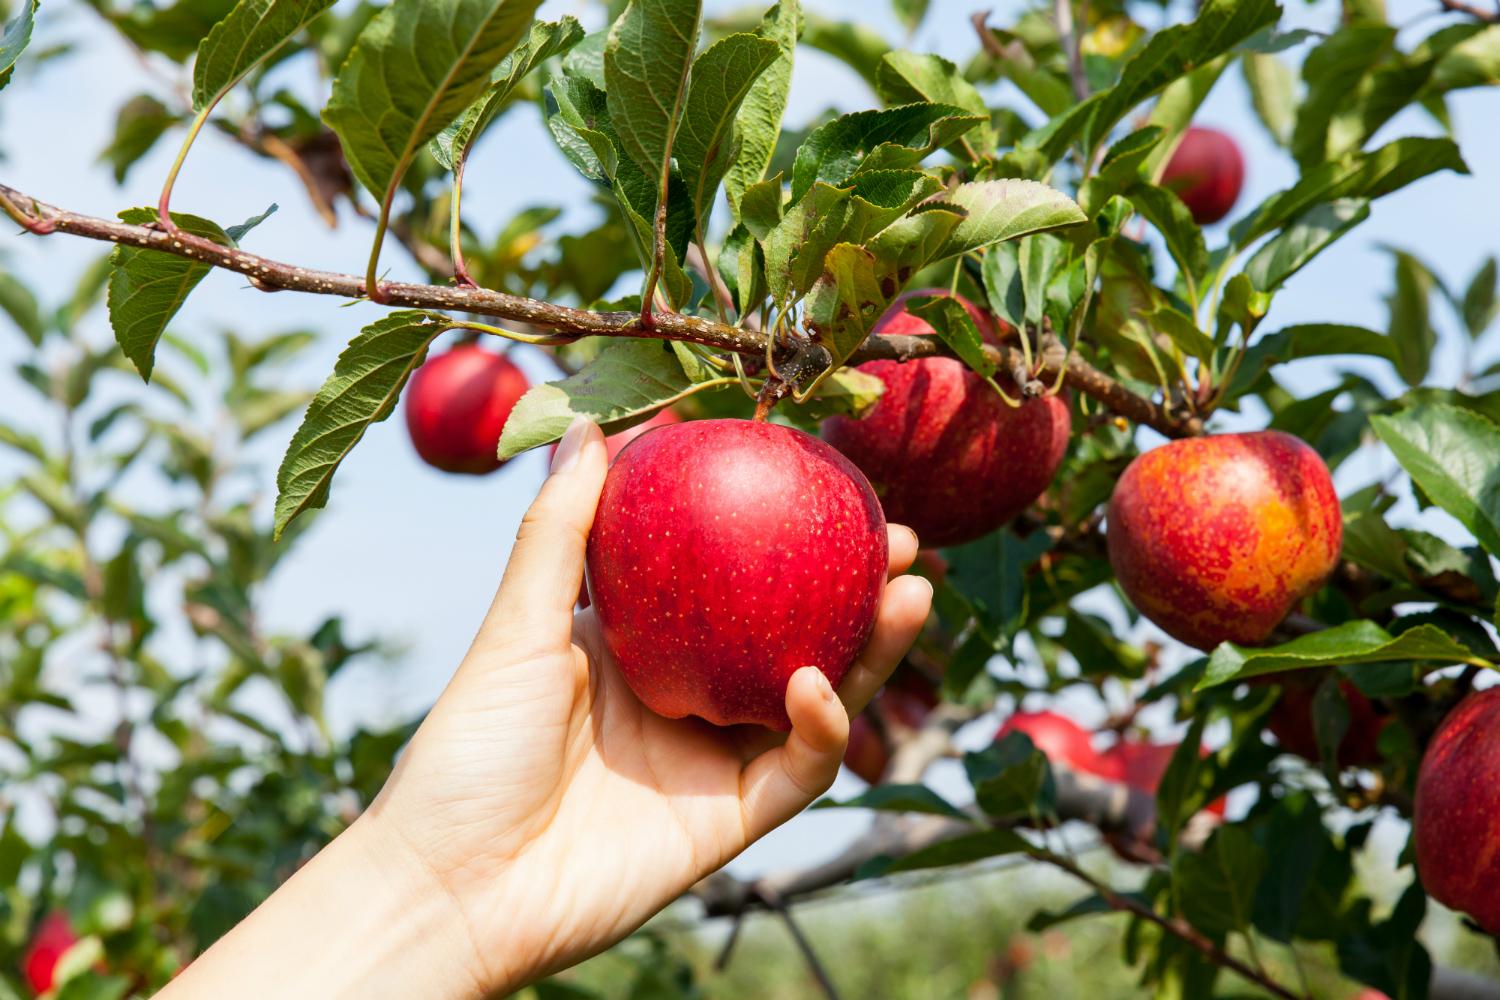 تنتج بعض النباتات الثمار مثل التفاح